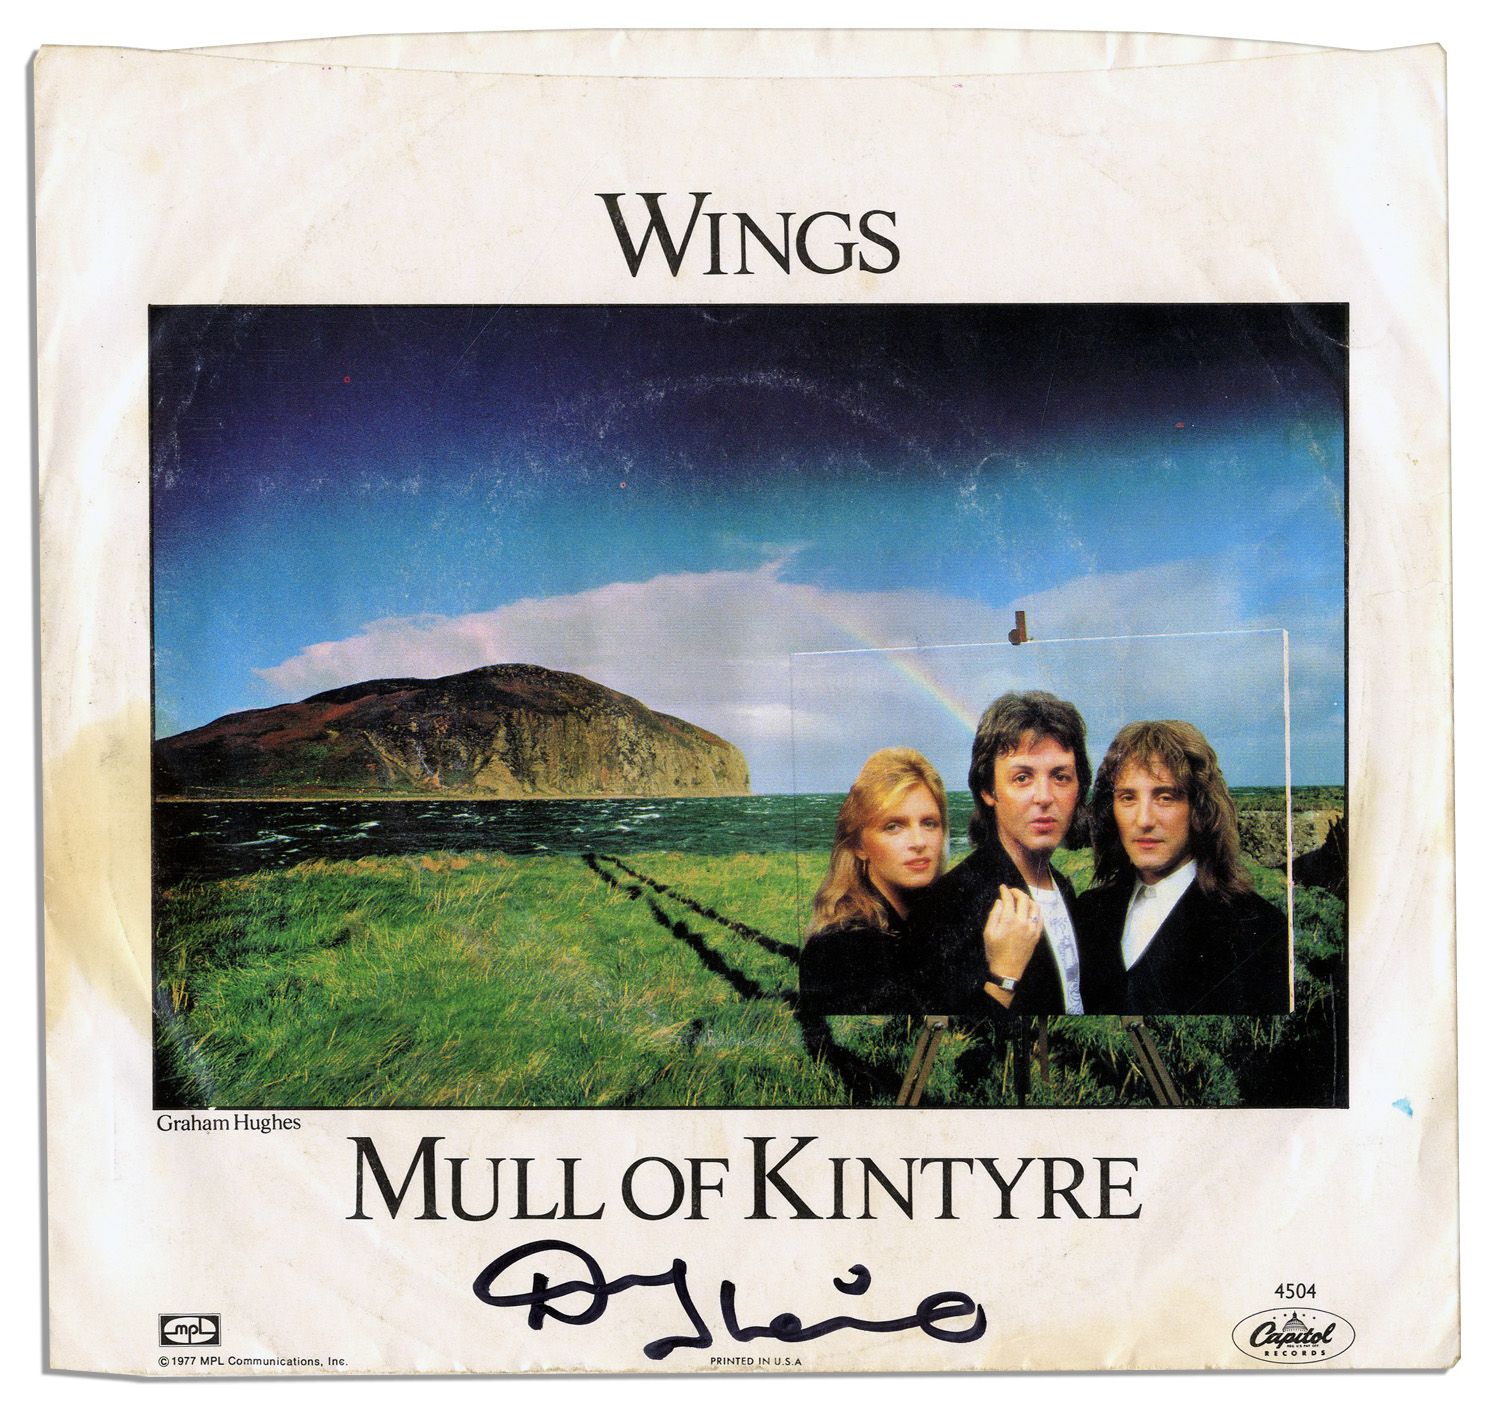 Mull of kintyre. 1977: Wings, "Mull of Kintyre". Paul MCCARTNEY & Wings - Mull of Kintyre. Paul MCCARTNEY - Paul of Kintyre. Wings Double a Mull of Kintyre.